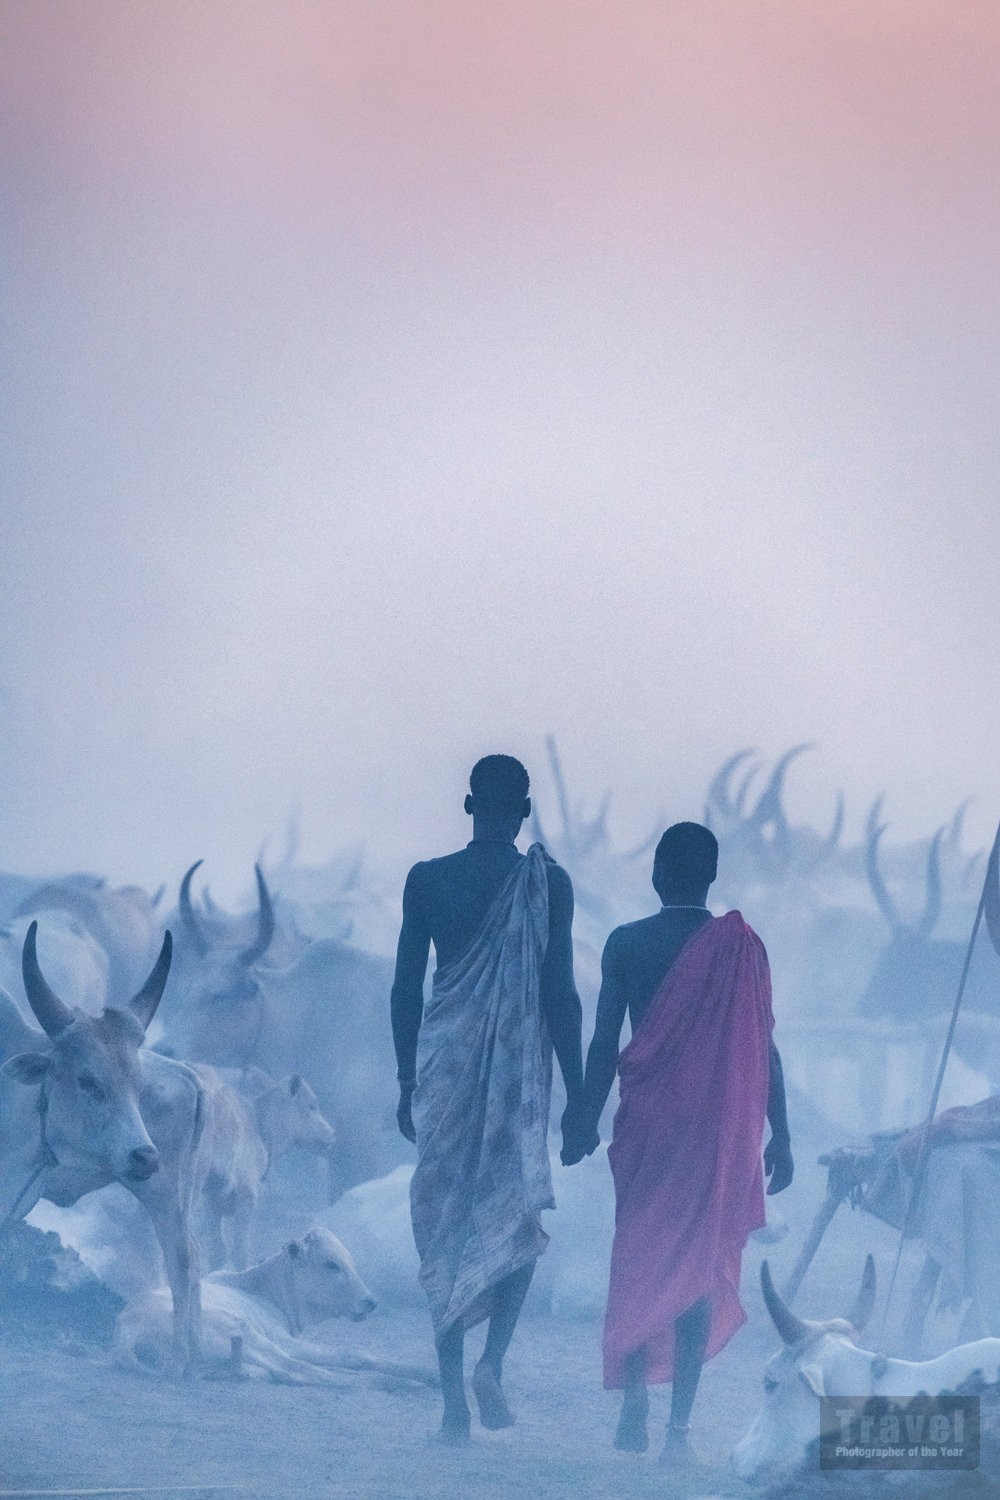 Мундари со своим скотом в Южном Судане. Победитель в категории Люди и культуры, 2019. Автор Тревор Коул